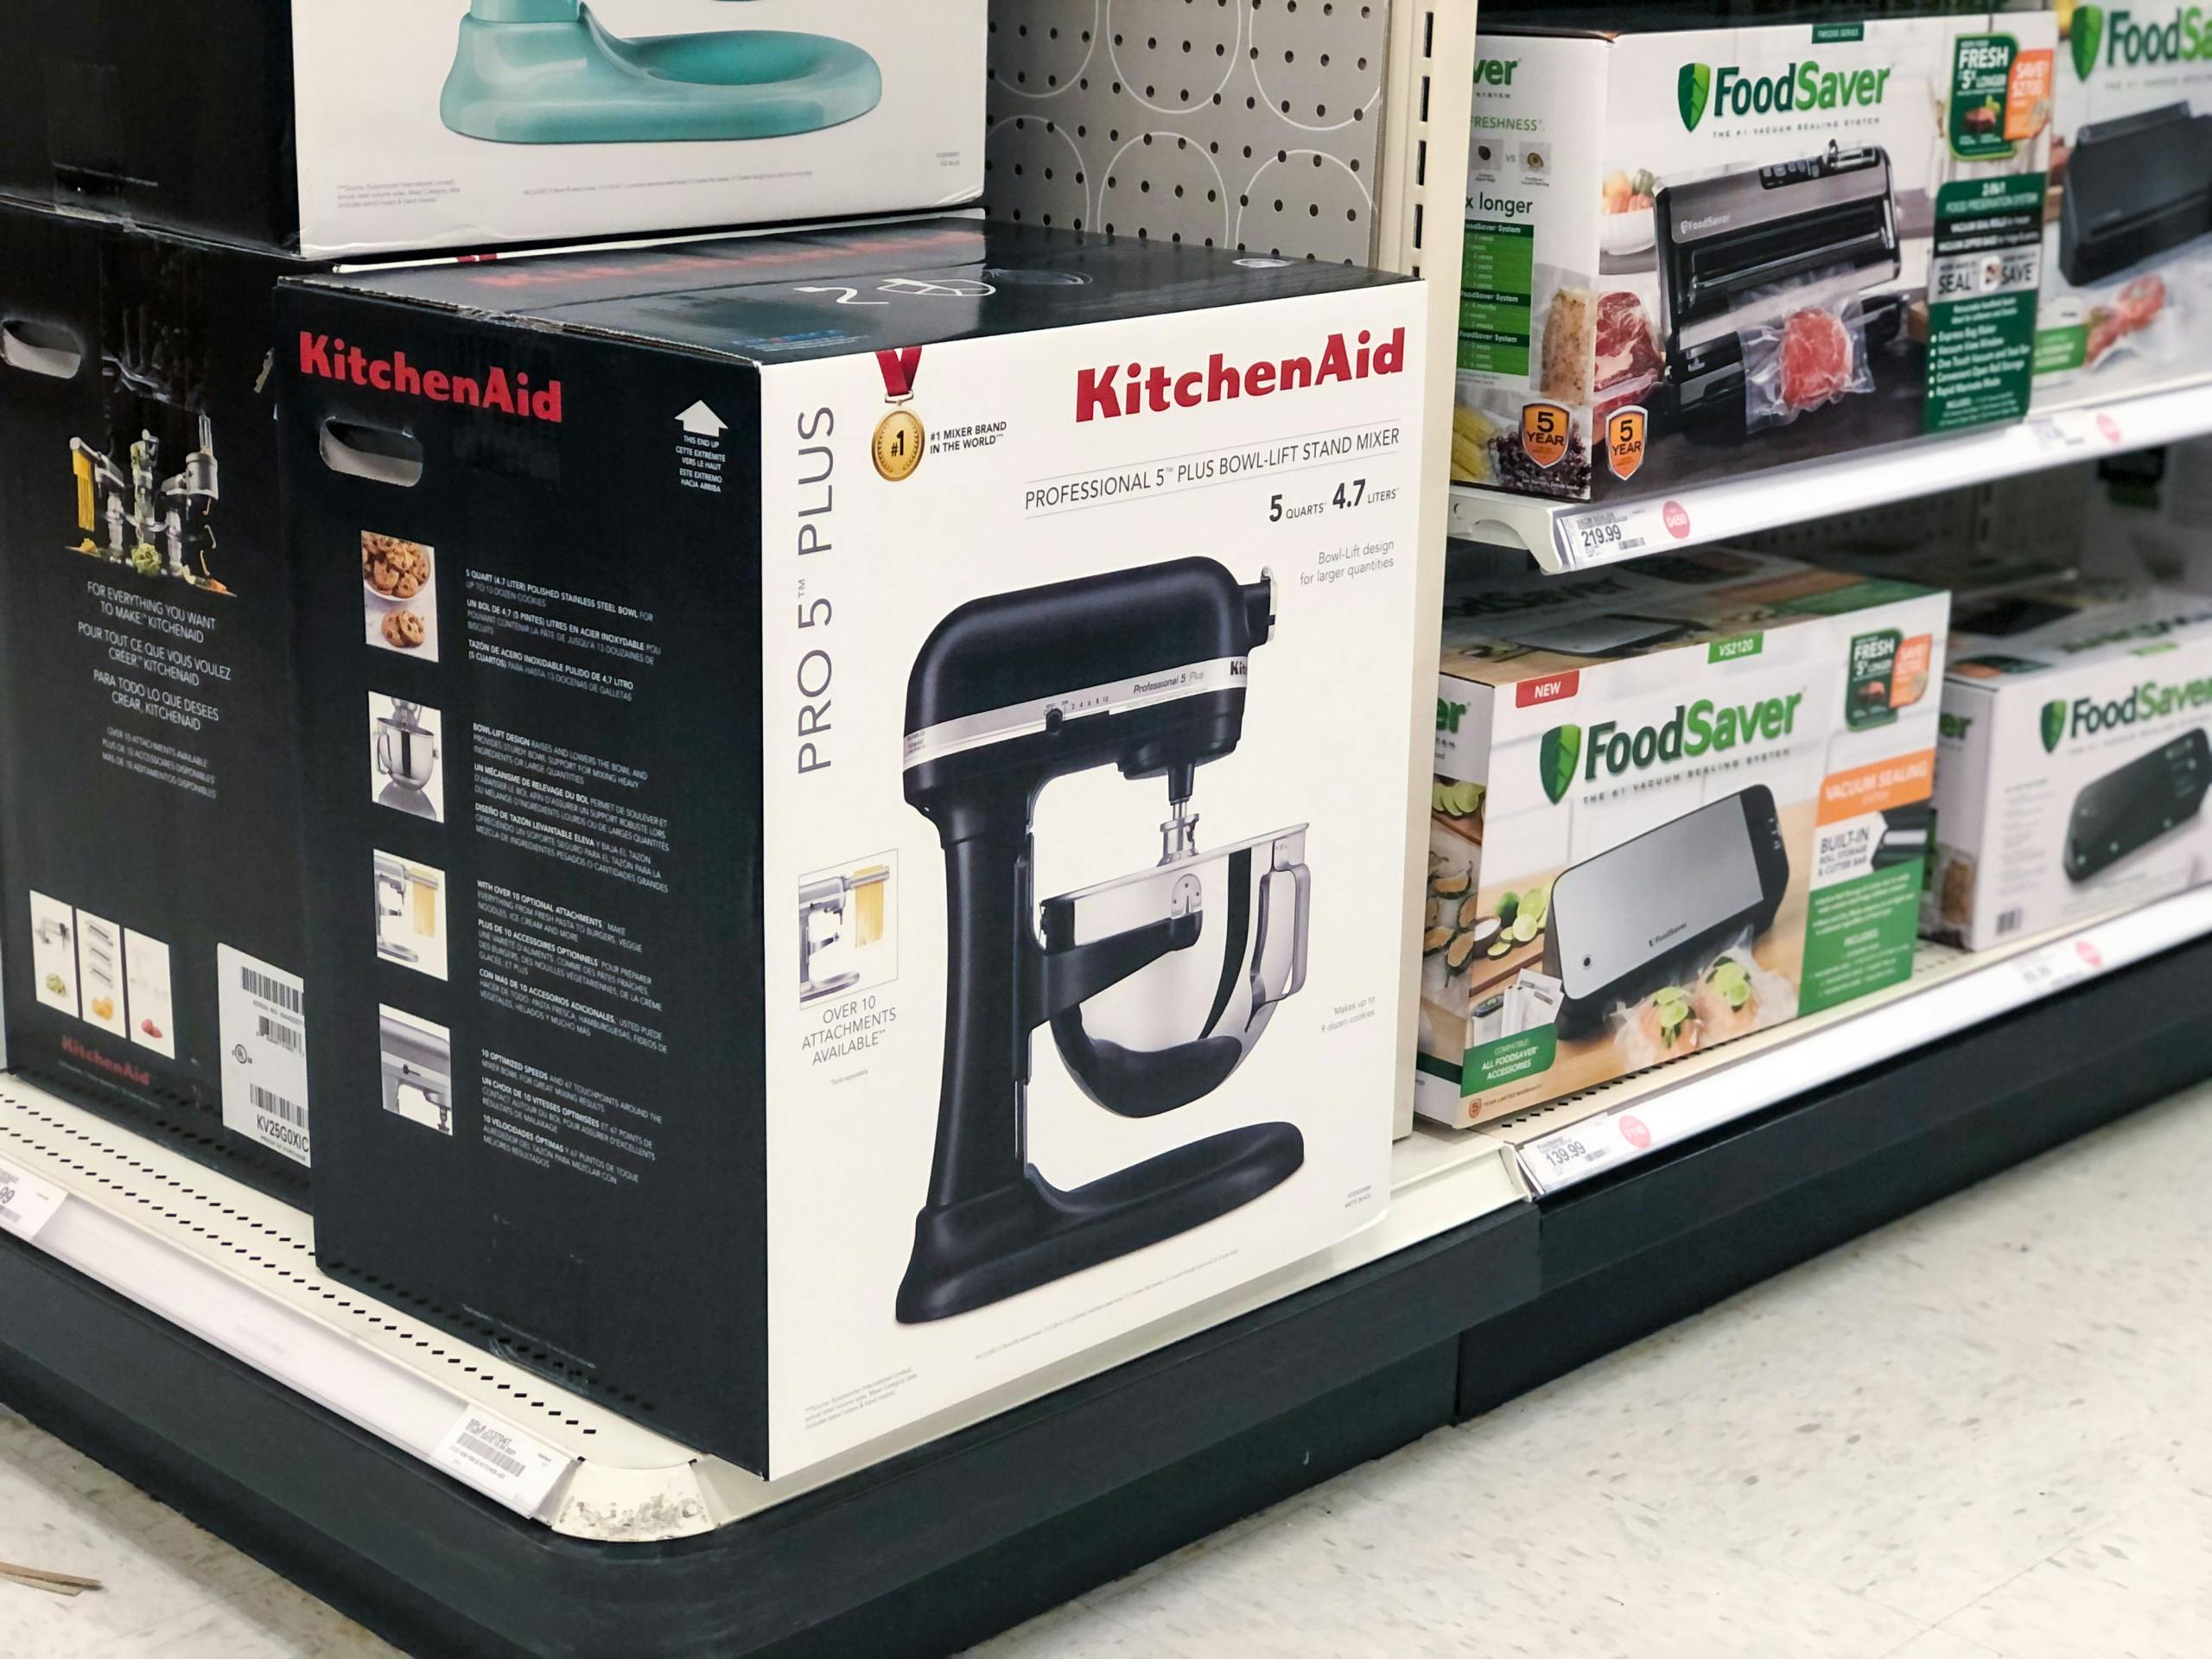 boxes of KitchenAid mixers on display at Target